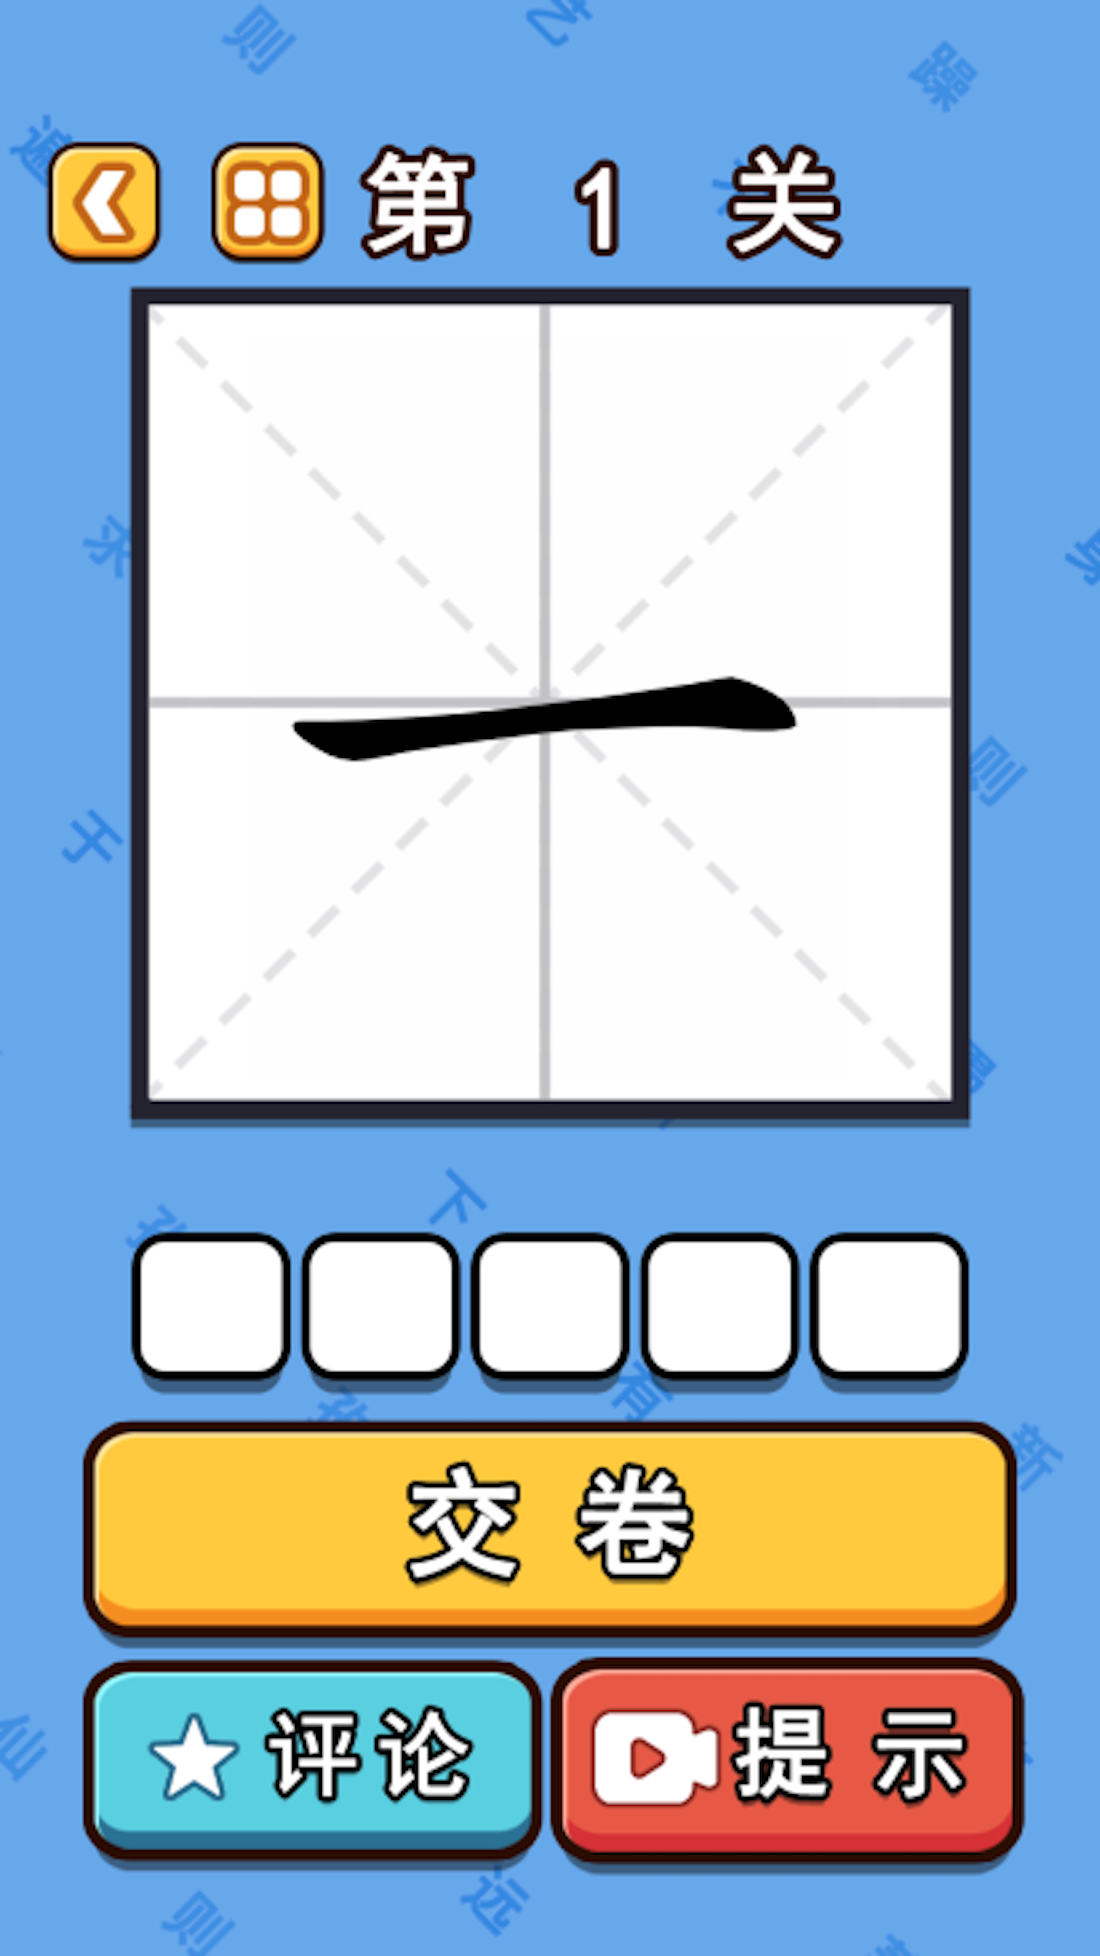 Screenshot 1 of ความลึกลับของคำศัพท์เกมคำศัพท์ตัวอักษรจีน 1.0.0